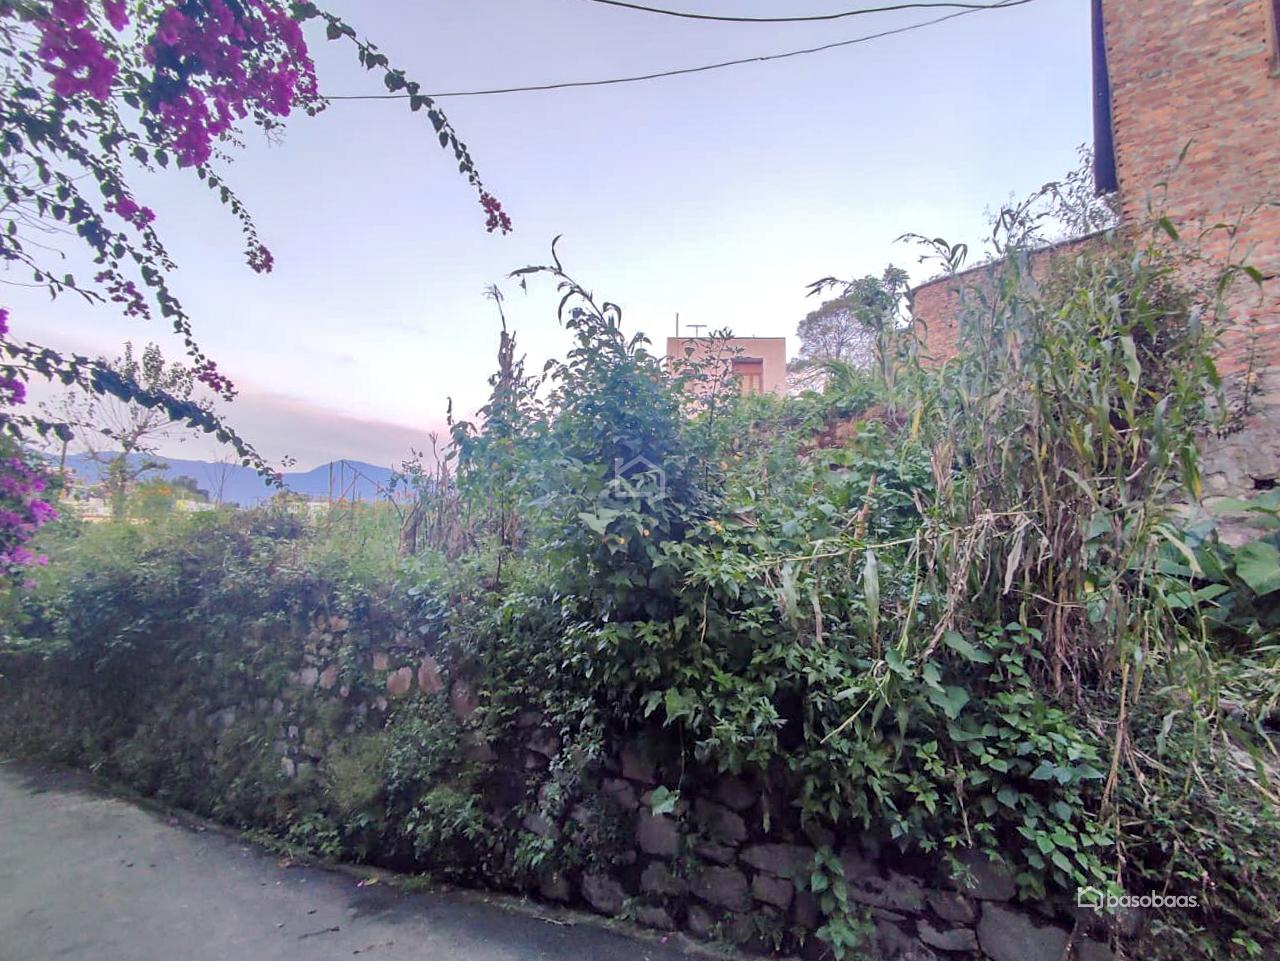 Residental Land : Land for Sale in Bansbari, Kathmandu Image 1